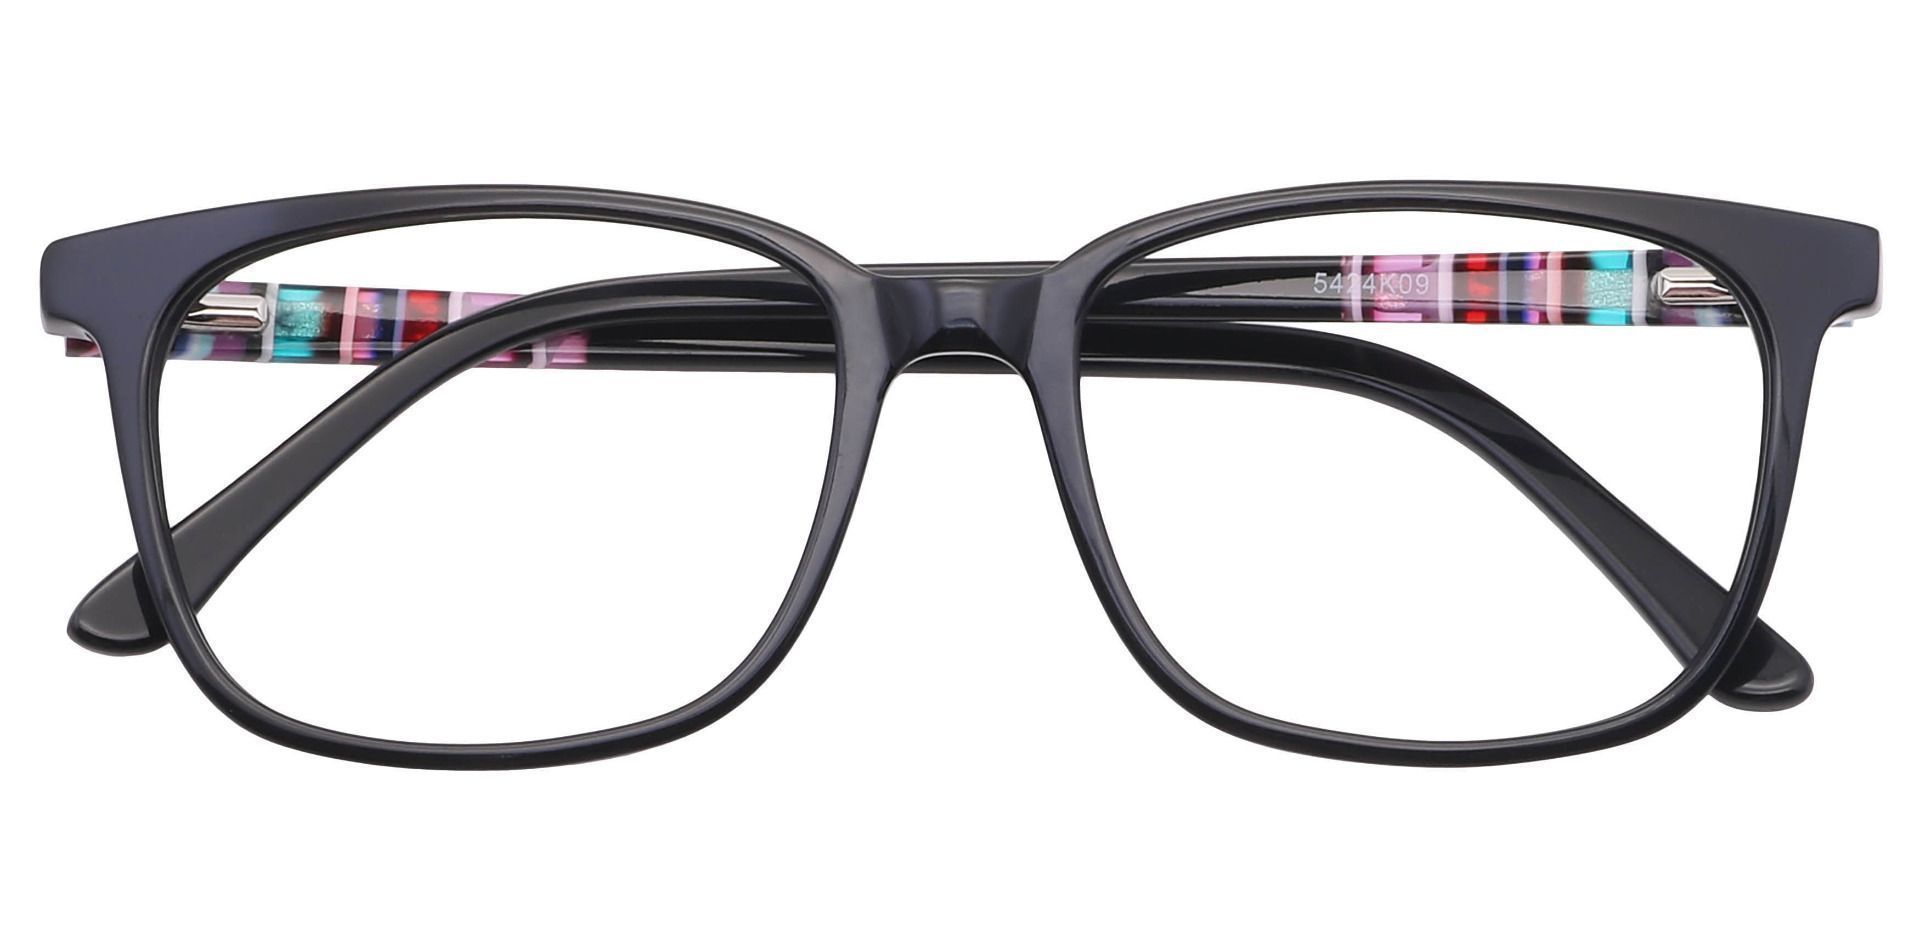 Fern Square Progressive Glasses - Black